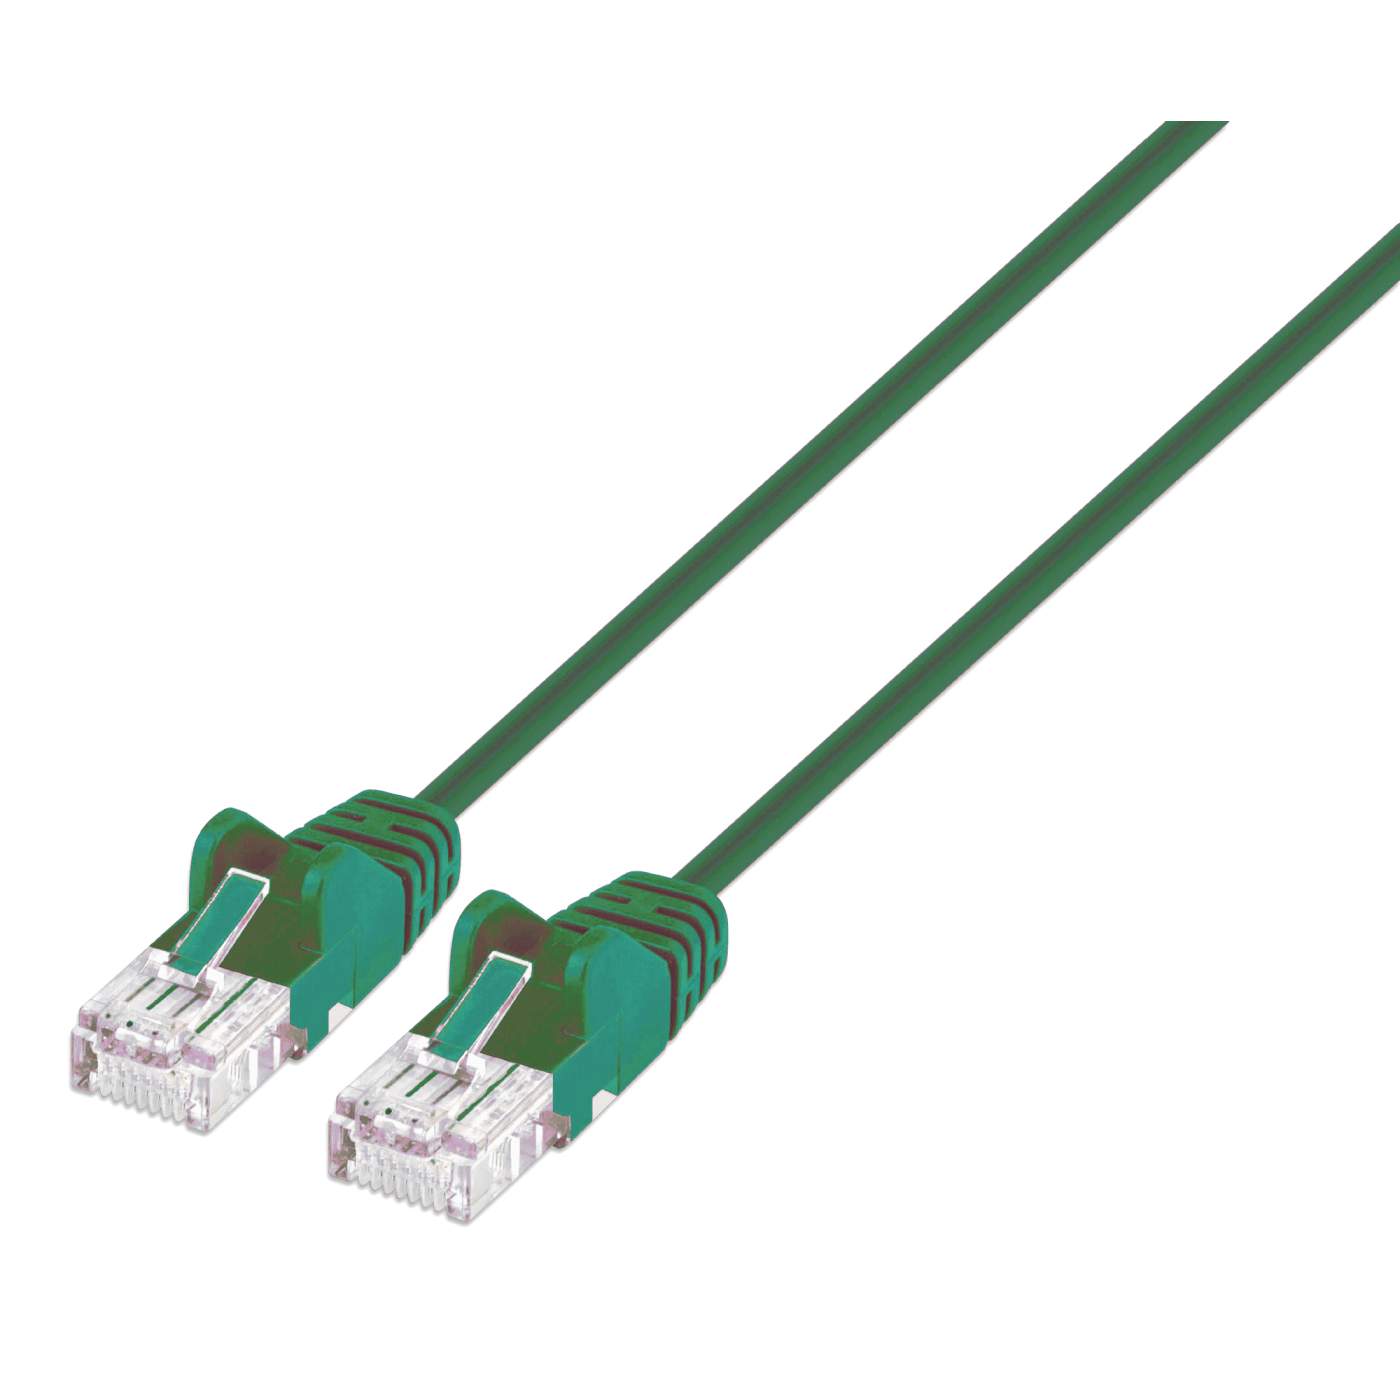 Câbles réseau INTELLINET Cable RJ45 cat 6 2m gris